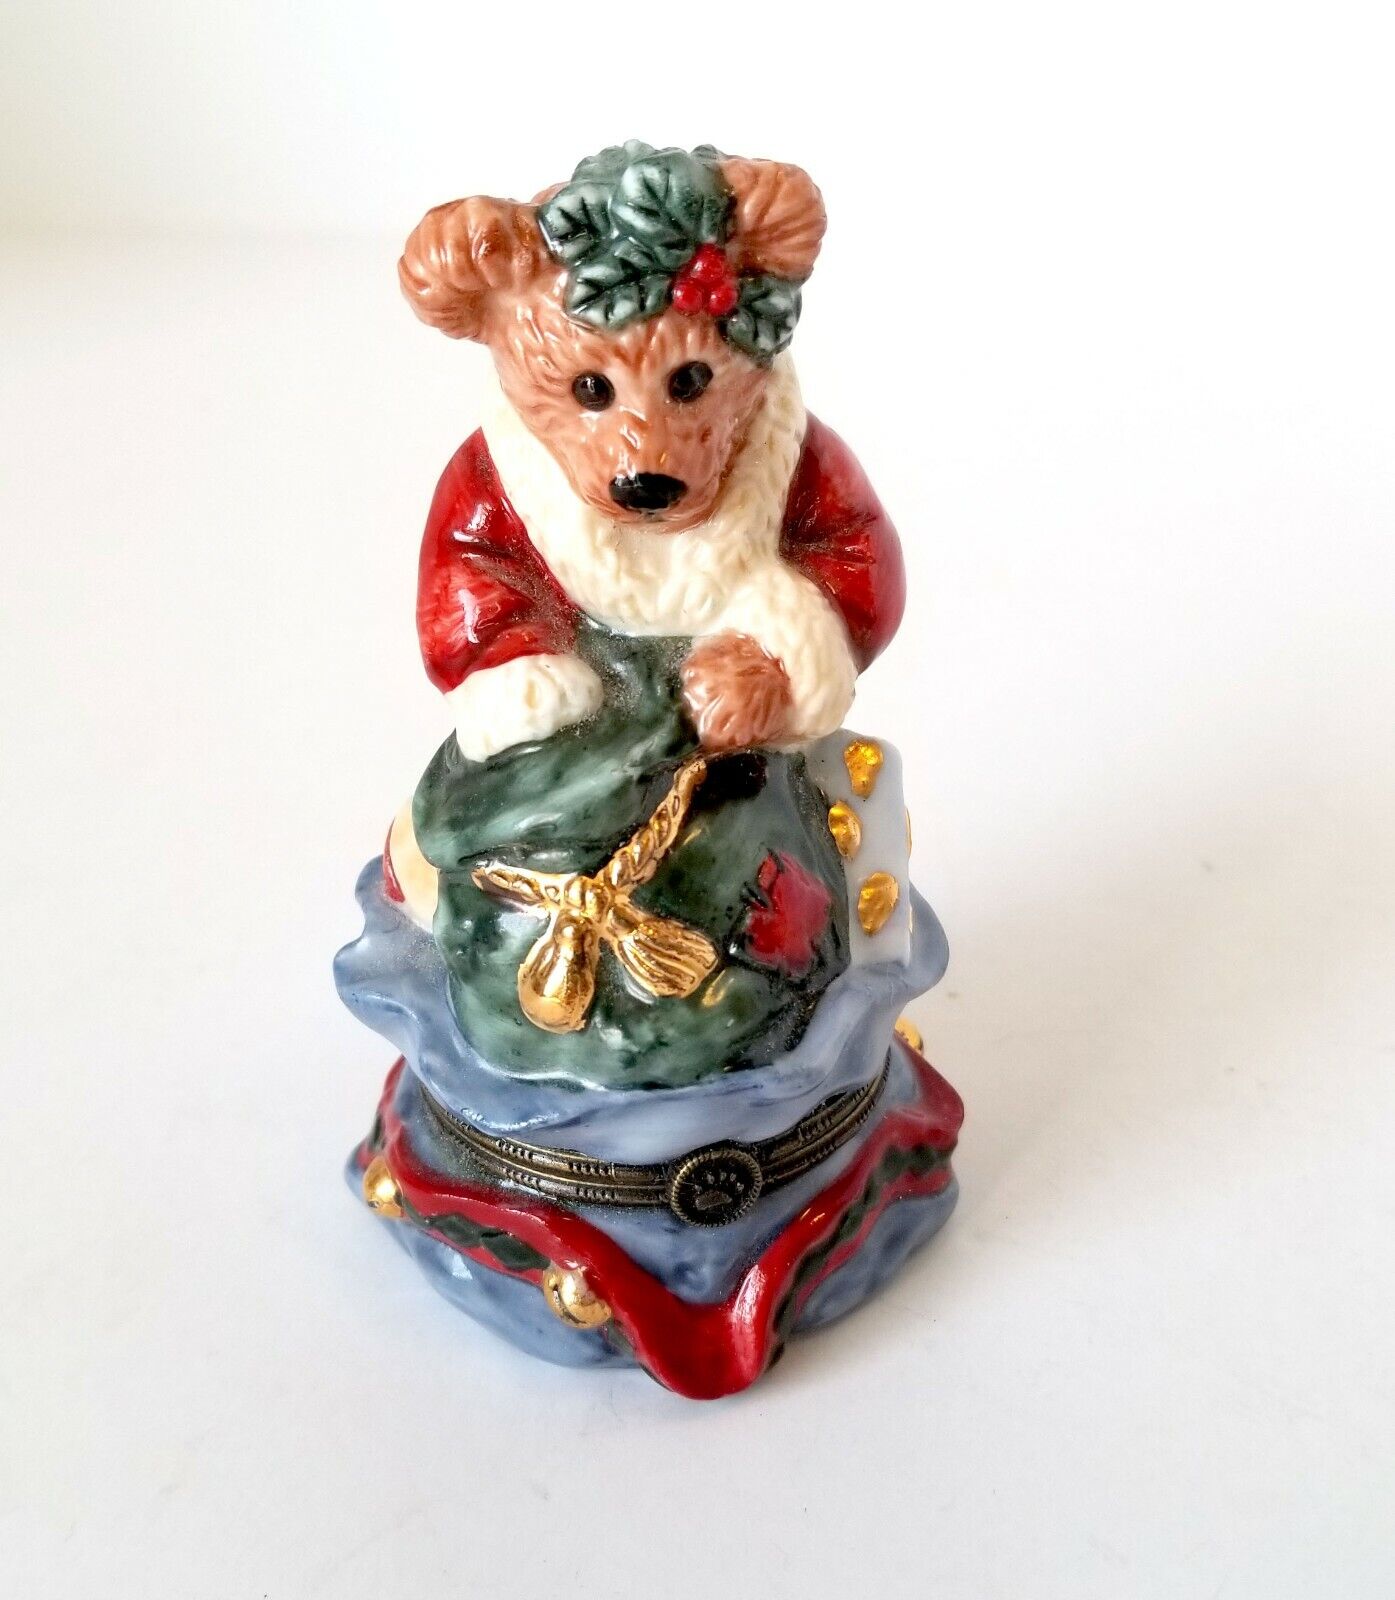 Bearware Pottery Santa Claus Bear Trinket Box with Tiny Bear Inside LNC